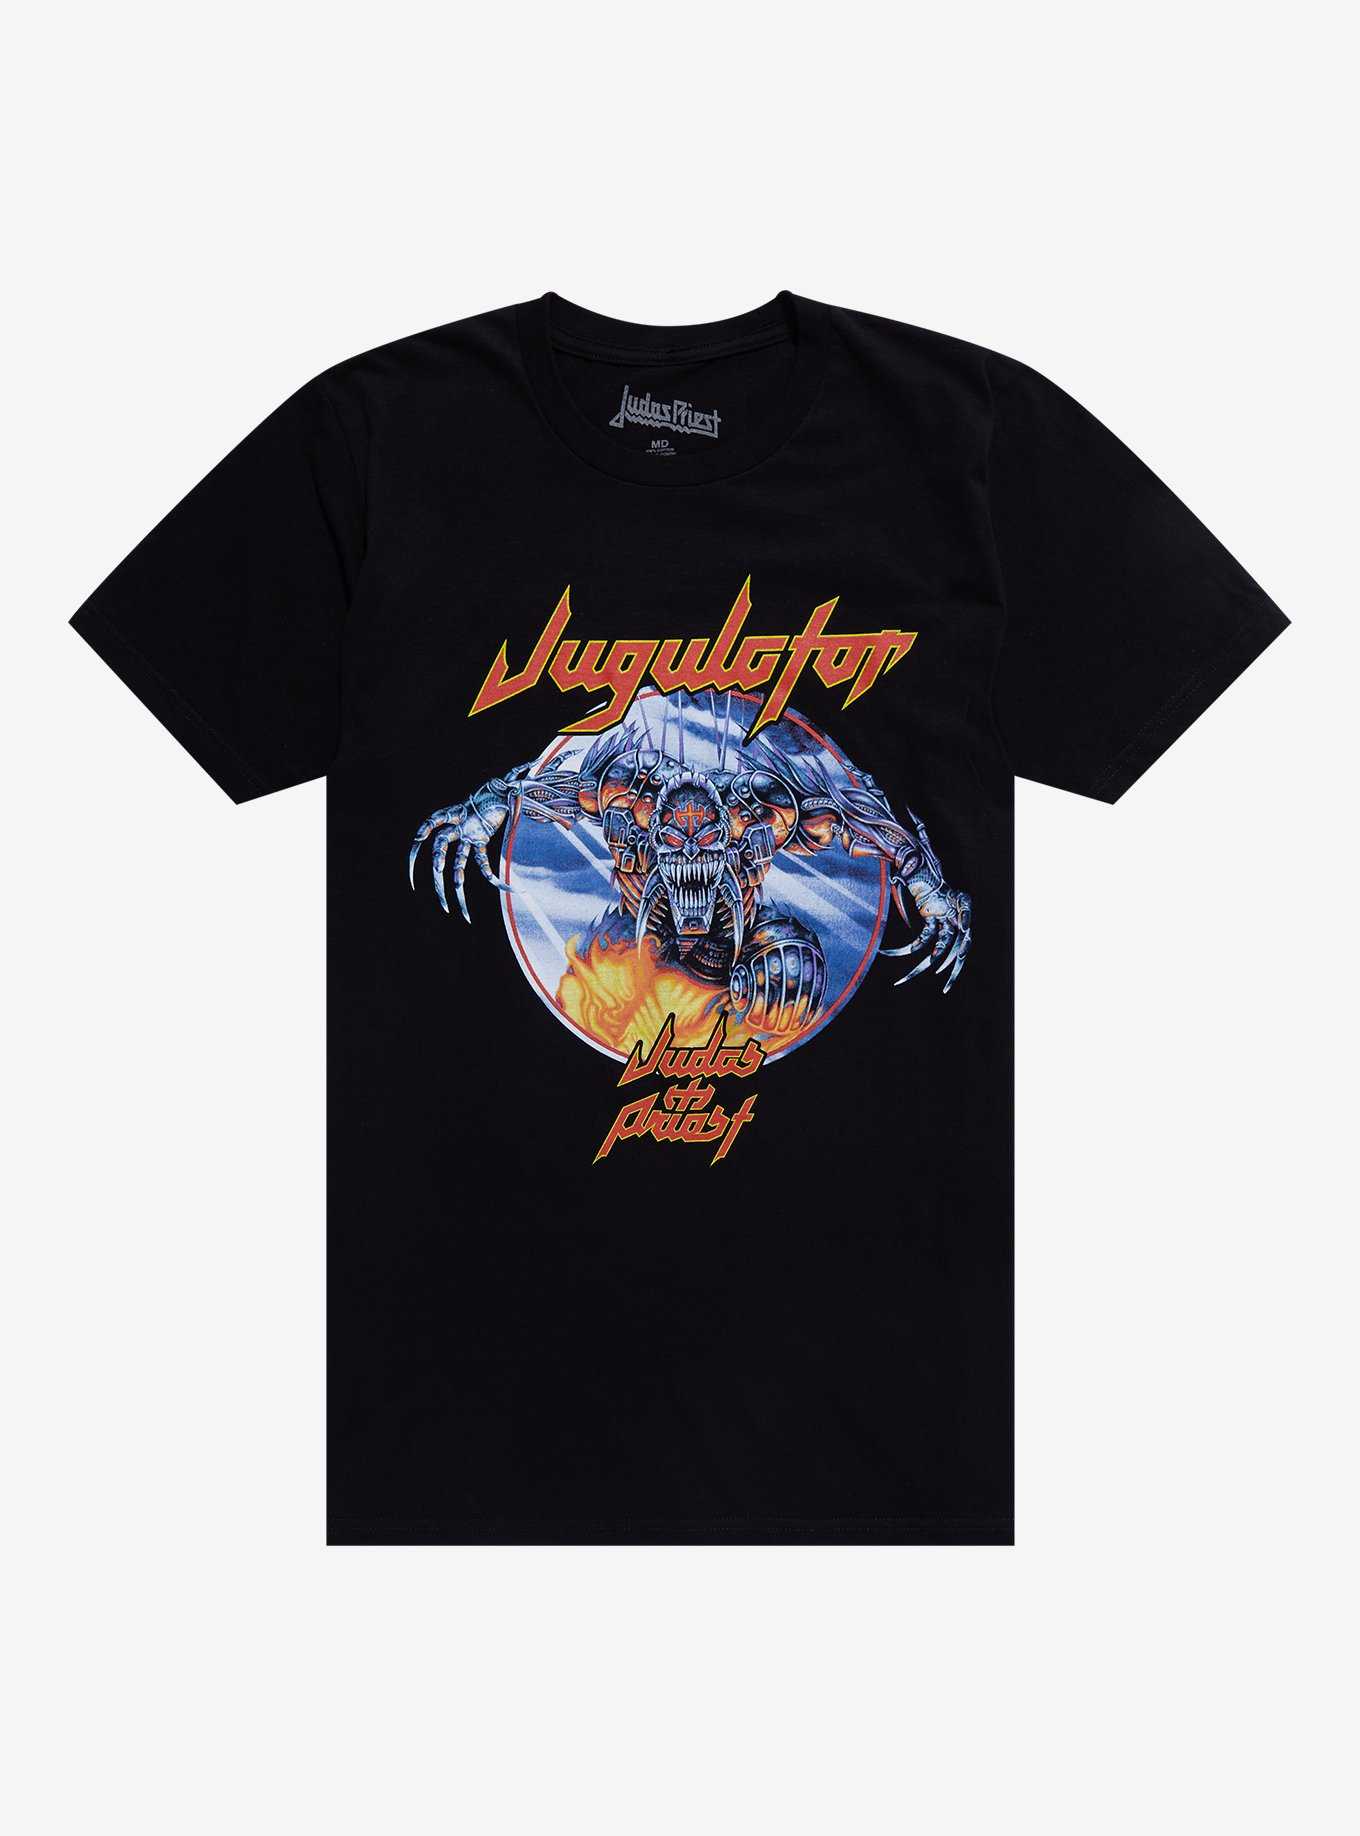 Judas Priest Jugulator Album Cover T-Shirt, , hi-res